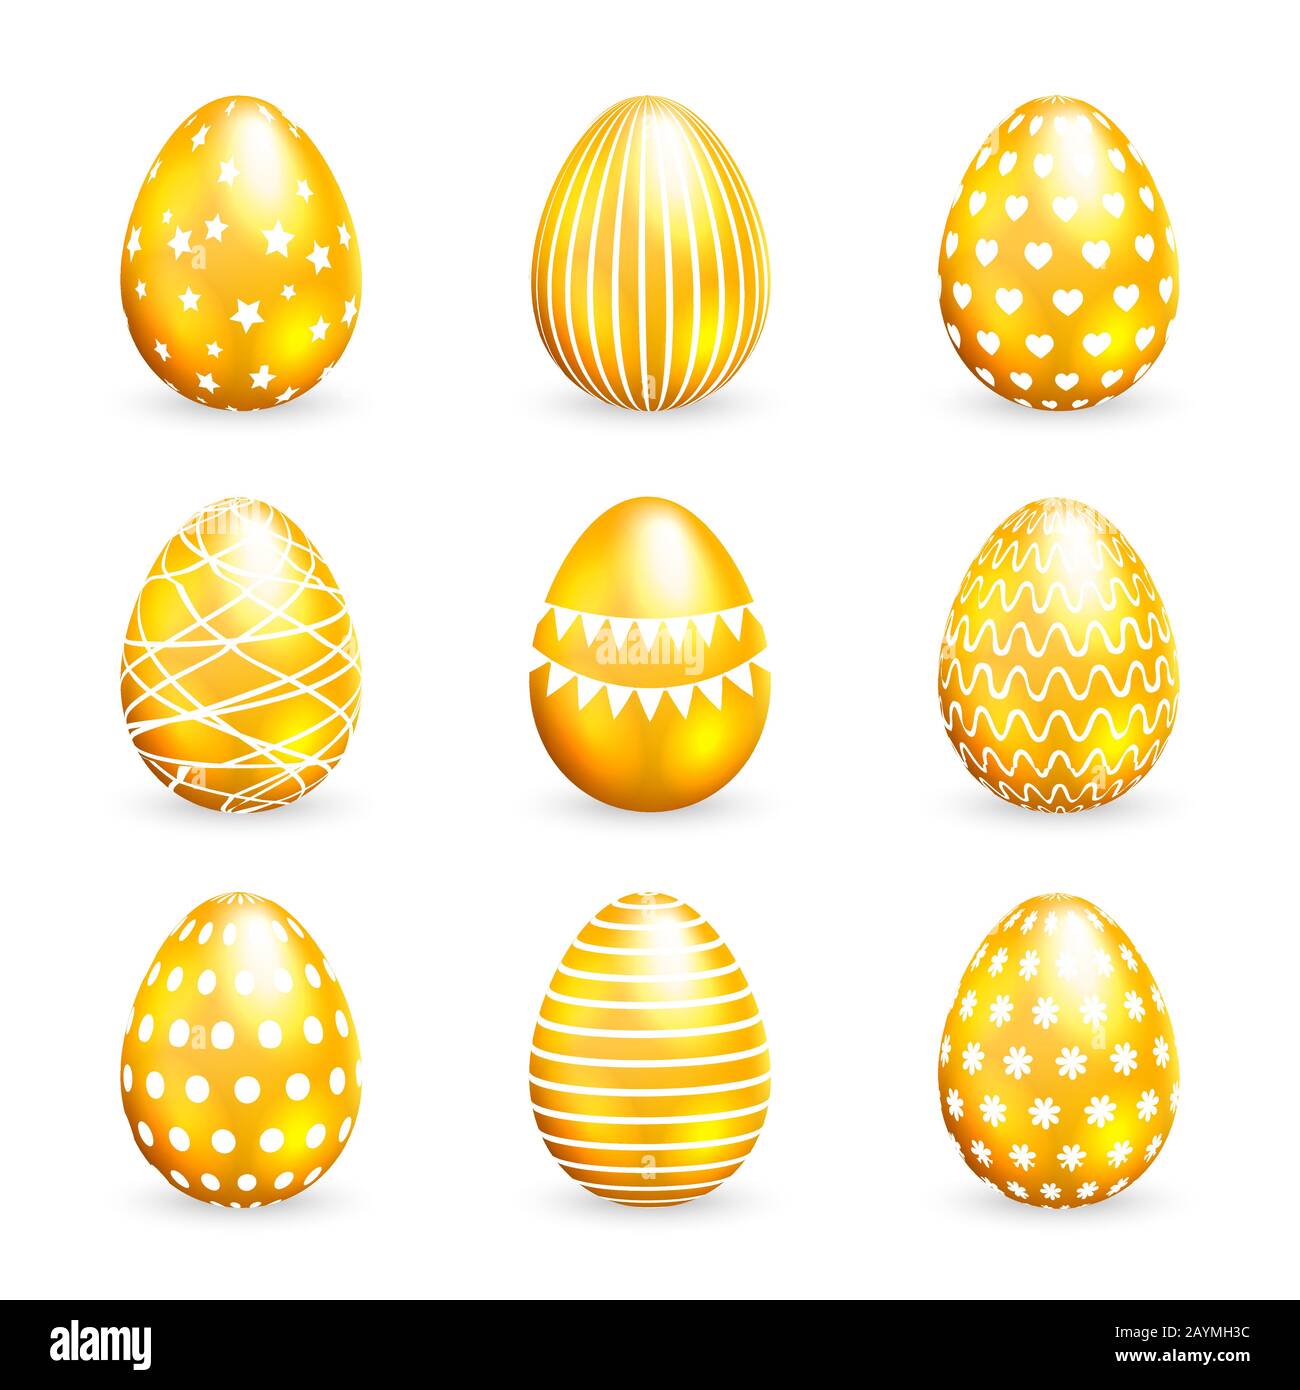 Golden easter eggs set on white background. Vector illustration Stock Vector